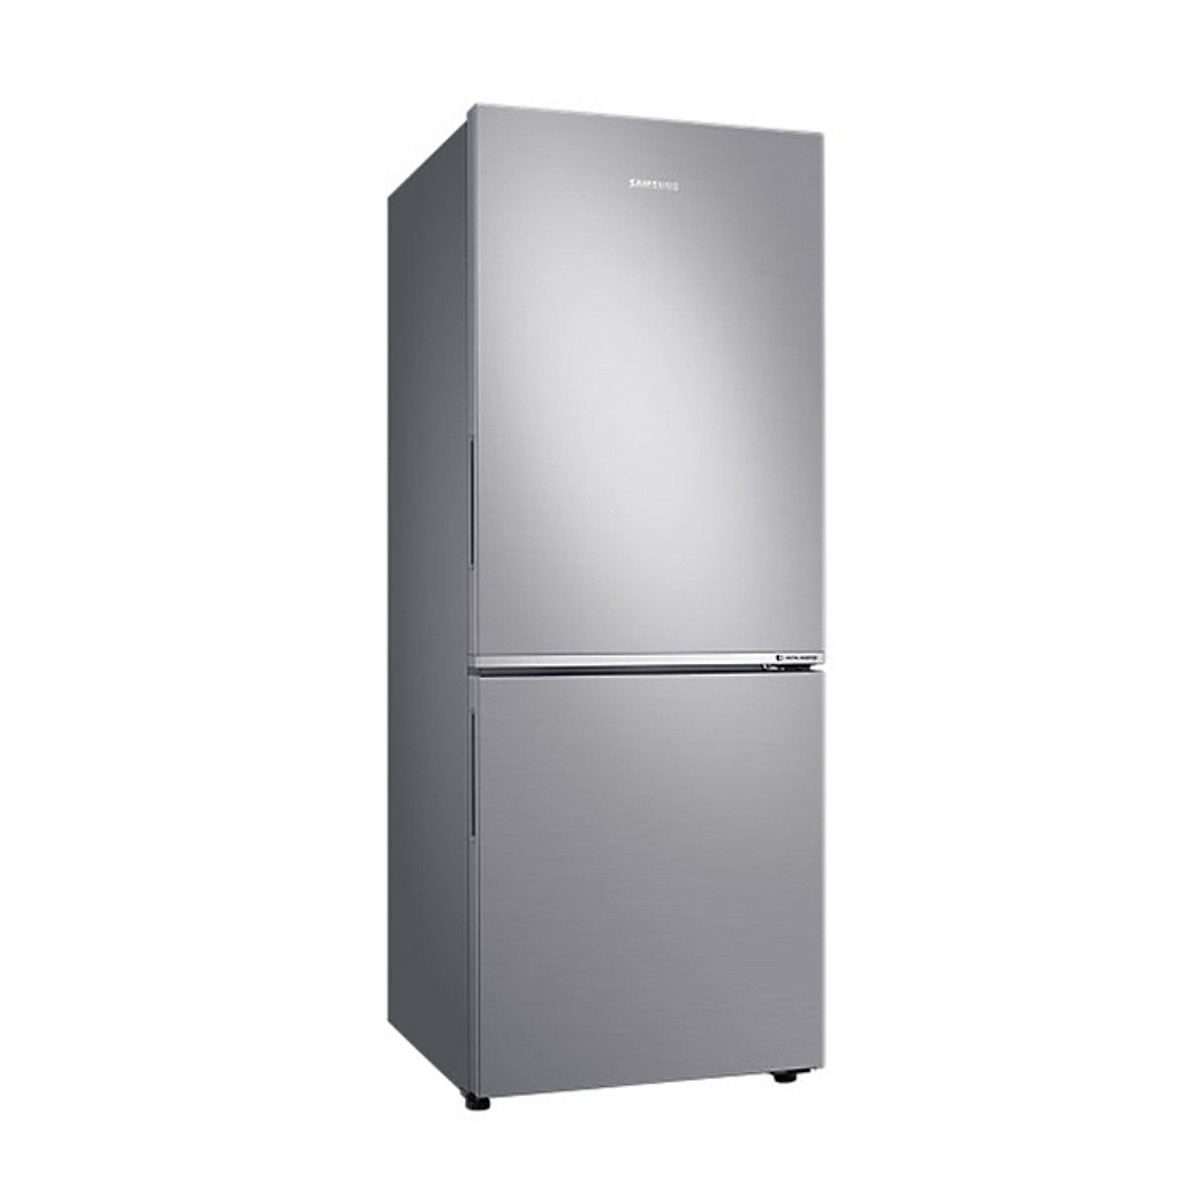 Tủ Lạnh Inverter Samsung RB27N4010S8/SV (280L) - Hàng Chính Hãng + Tặng Bình Đun Siêu Tốc